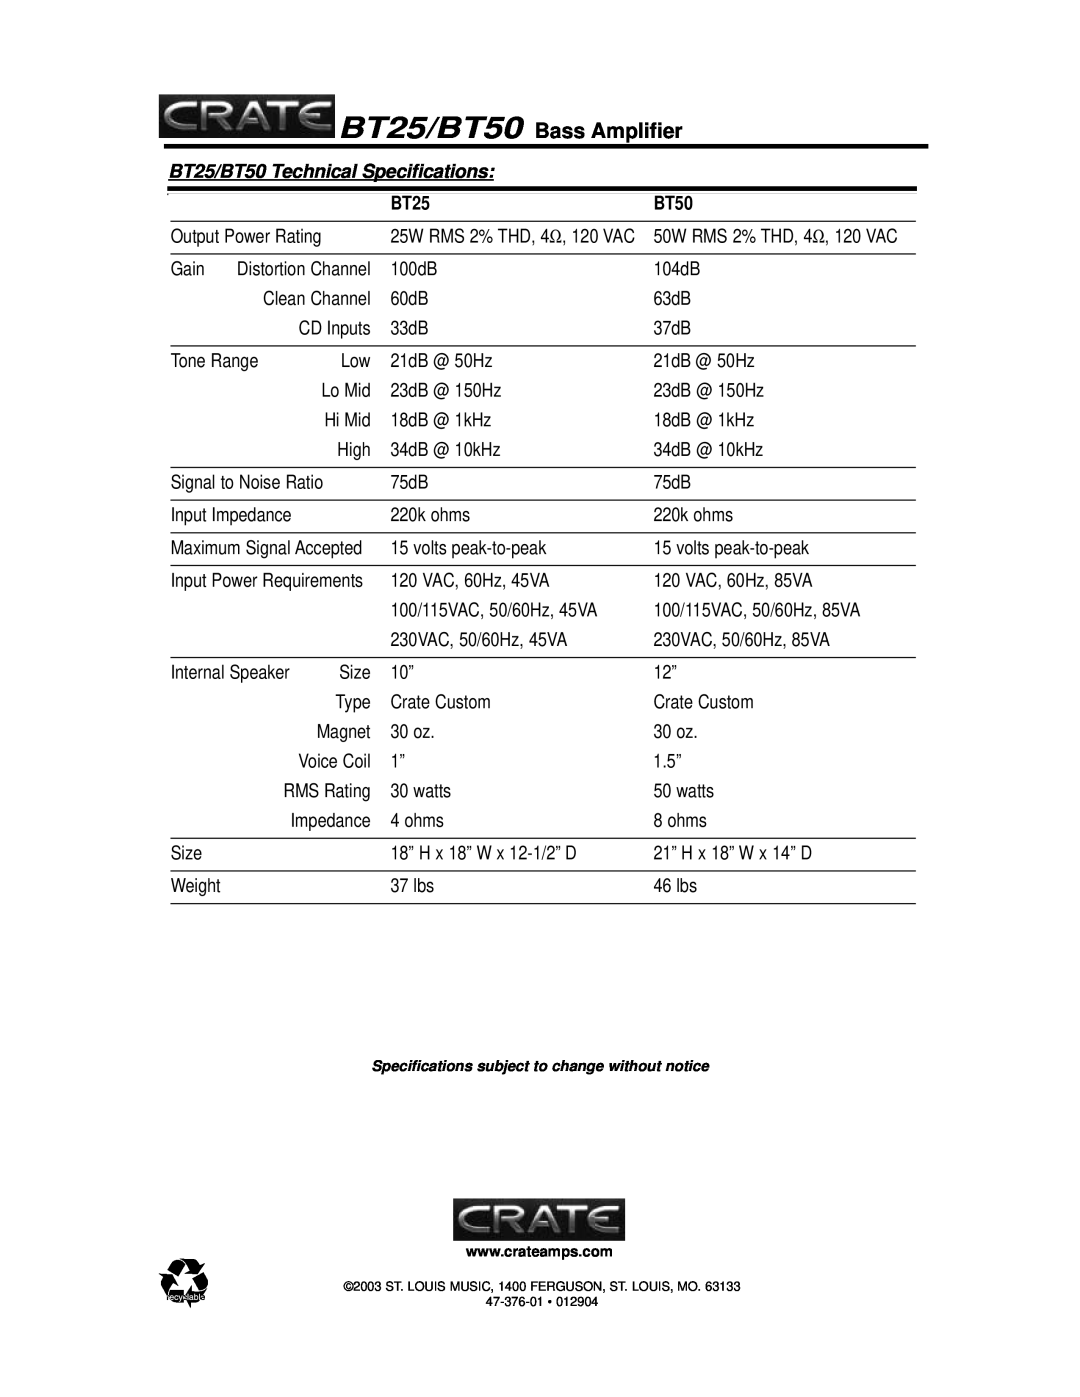 Crate Amplifiers bt25/bt50, crate bass amplifier manual BT25/BT50 Bass Amplifier, BT25/BT50 Technical Specifications 